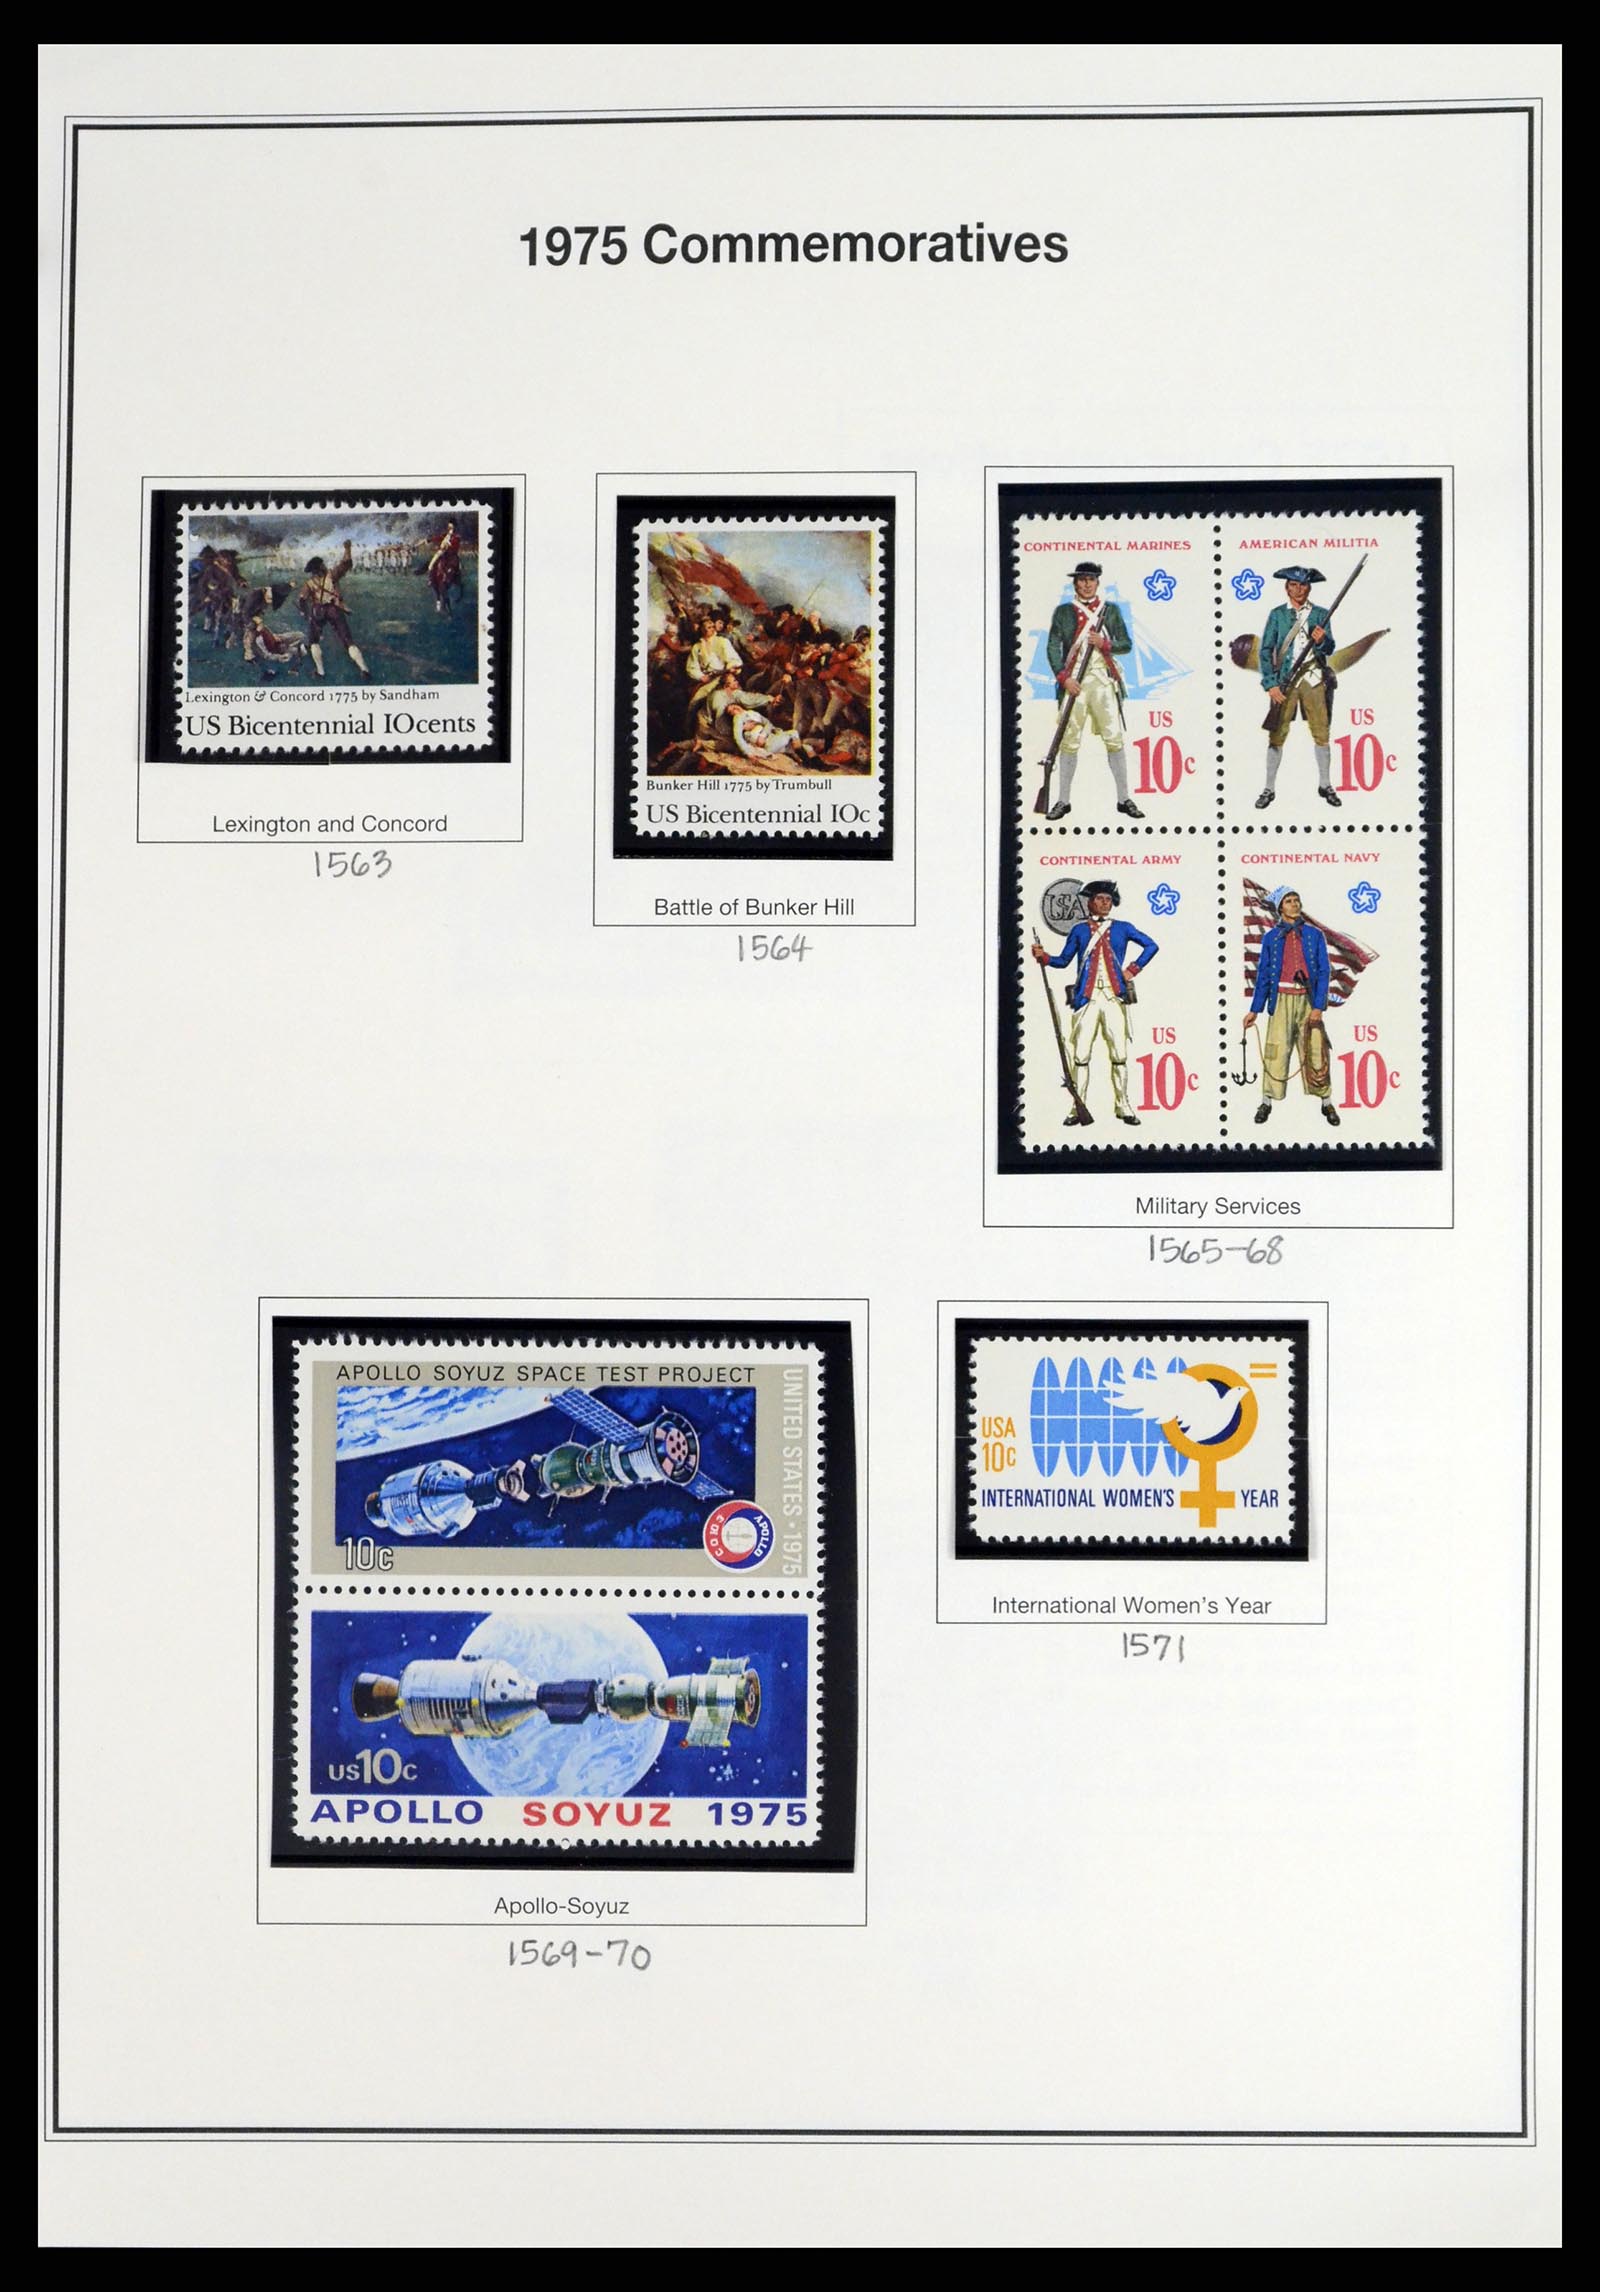 37193 022 - Stamp collection 37193 USA 1970-2020!